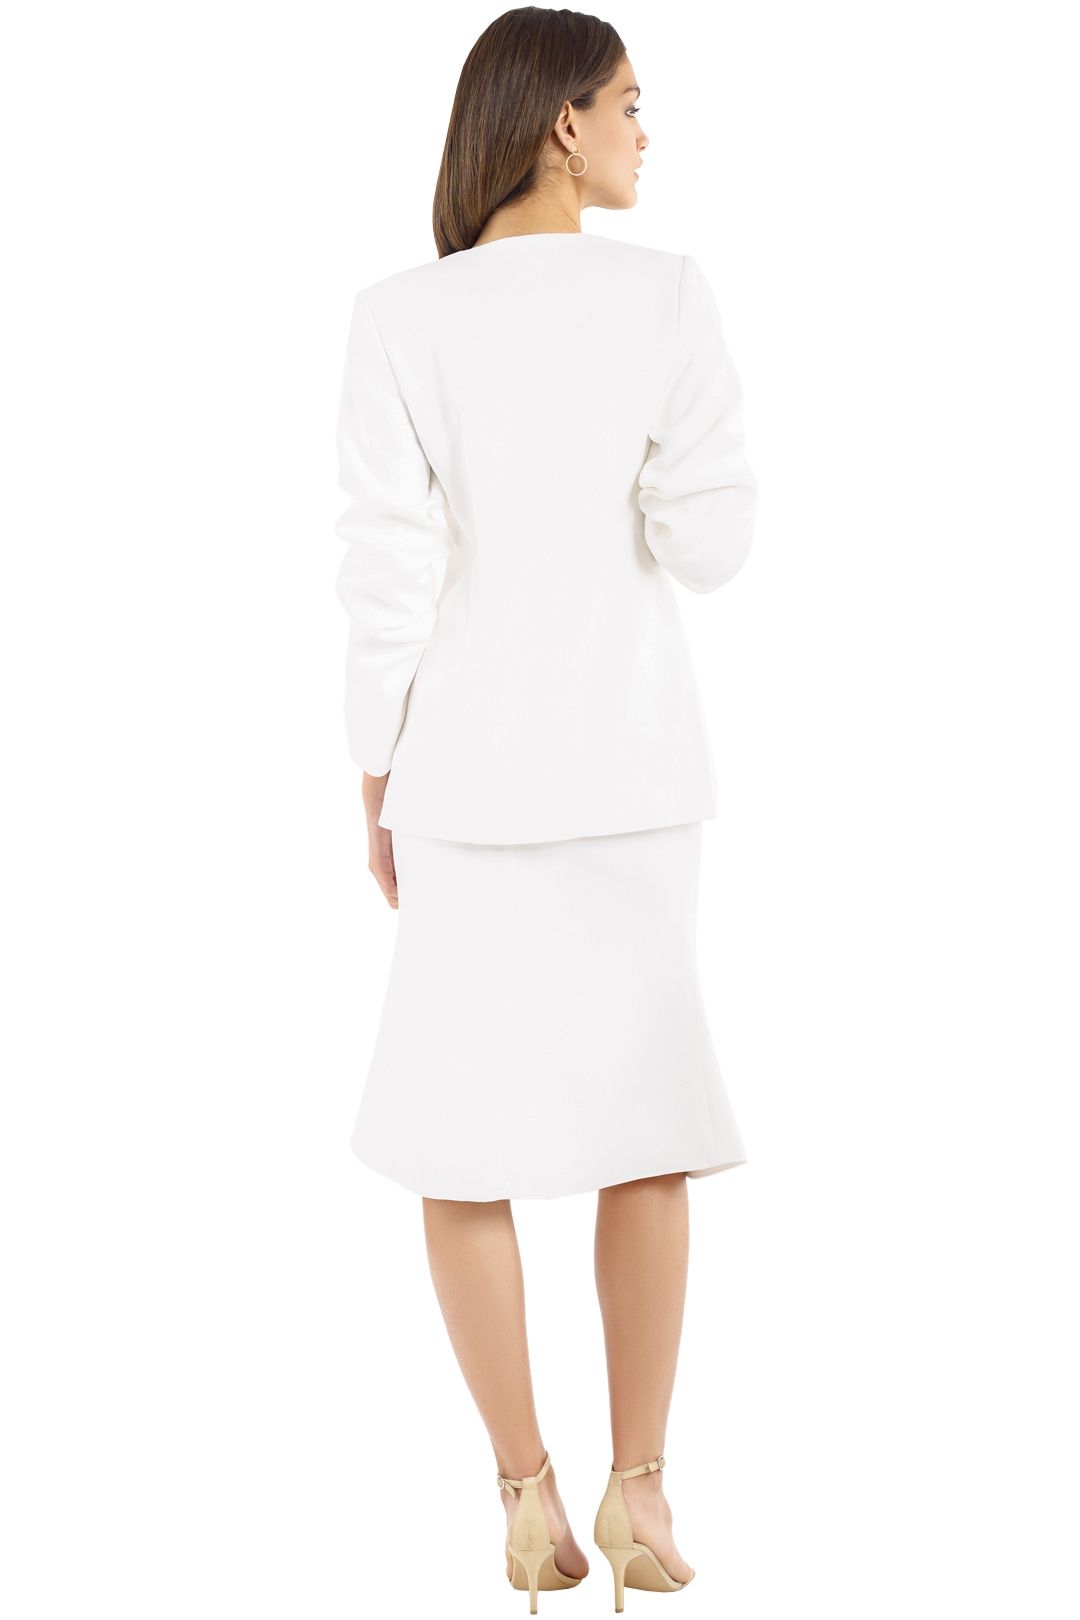 Elliatt - Plaza Blazer and Skirt Set - White - Back